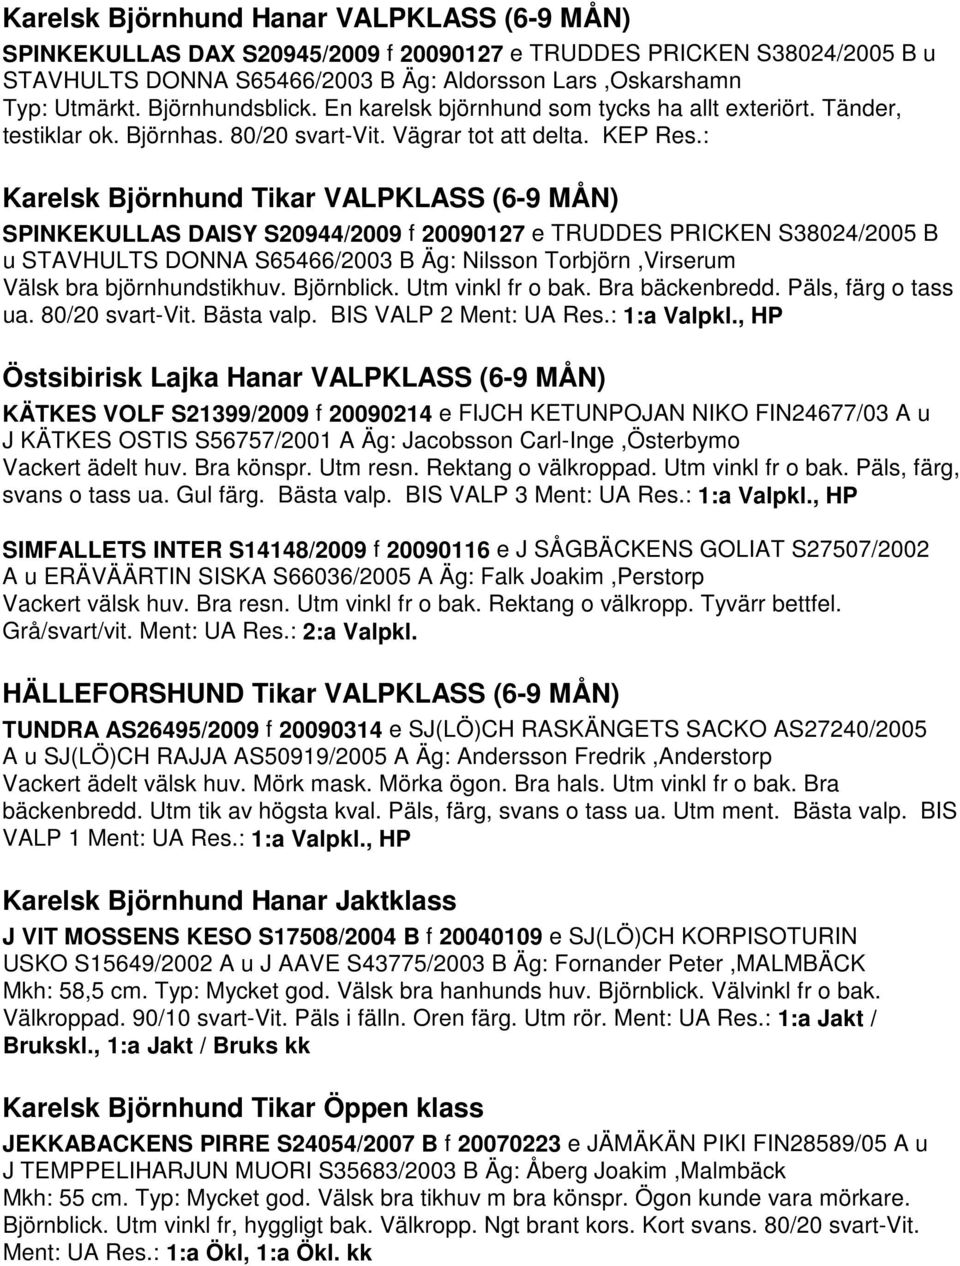 : Karelsk Björnhund Tikar VALPKLASS (6-9 MÅN) SPINKEKULLAS DAISY S20944/2009 f 20090127 e TRUDDES PRICKEN S38024/2005 B u STAVHULTS DONNA S65466/2003 B Äg: Nilsson Torbjörn,Virserum Välsk bra